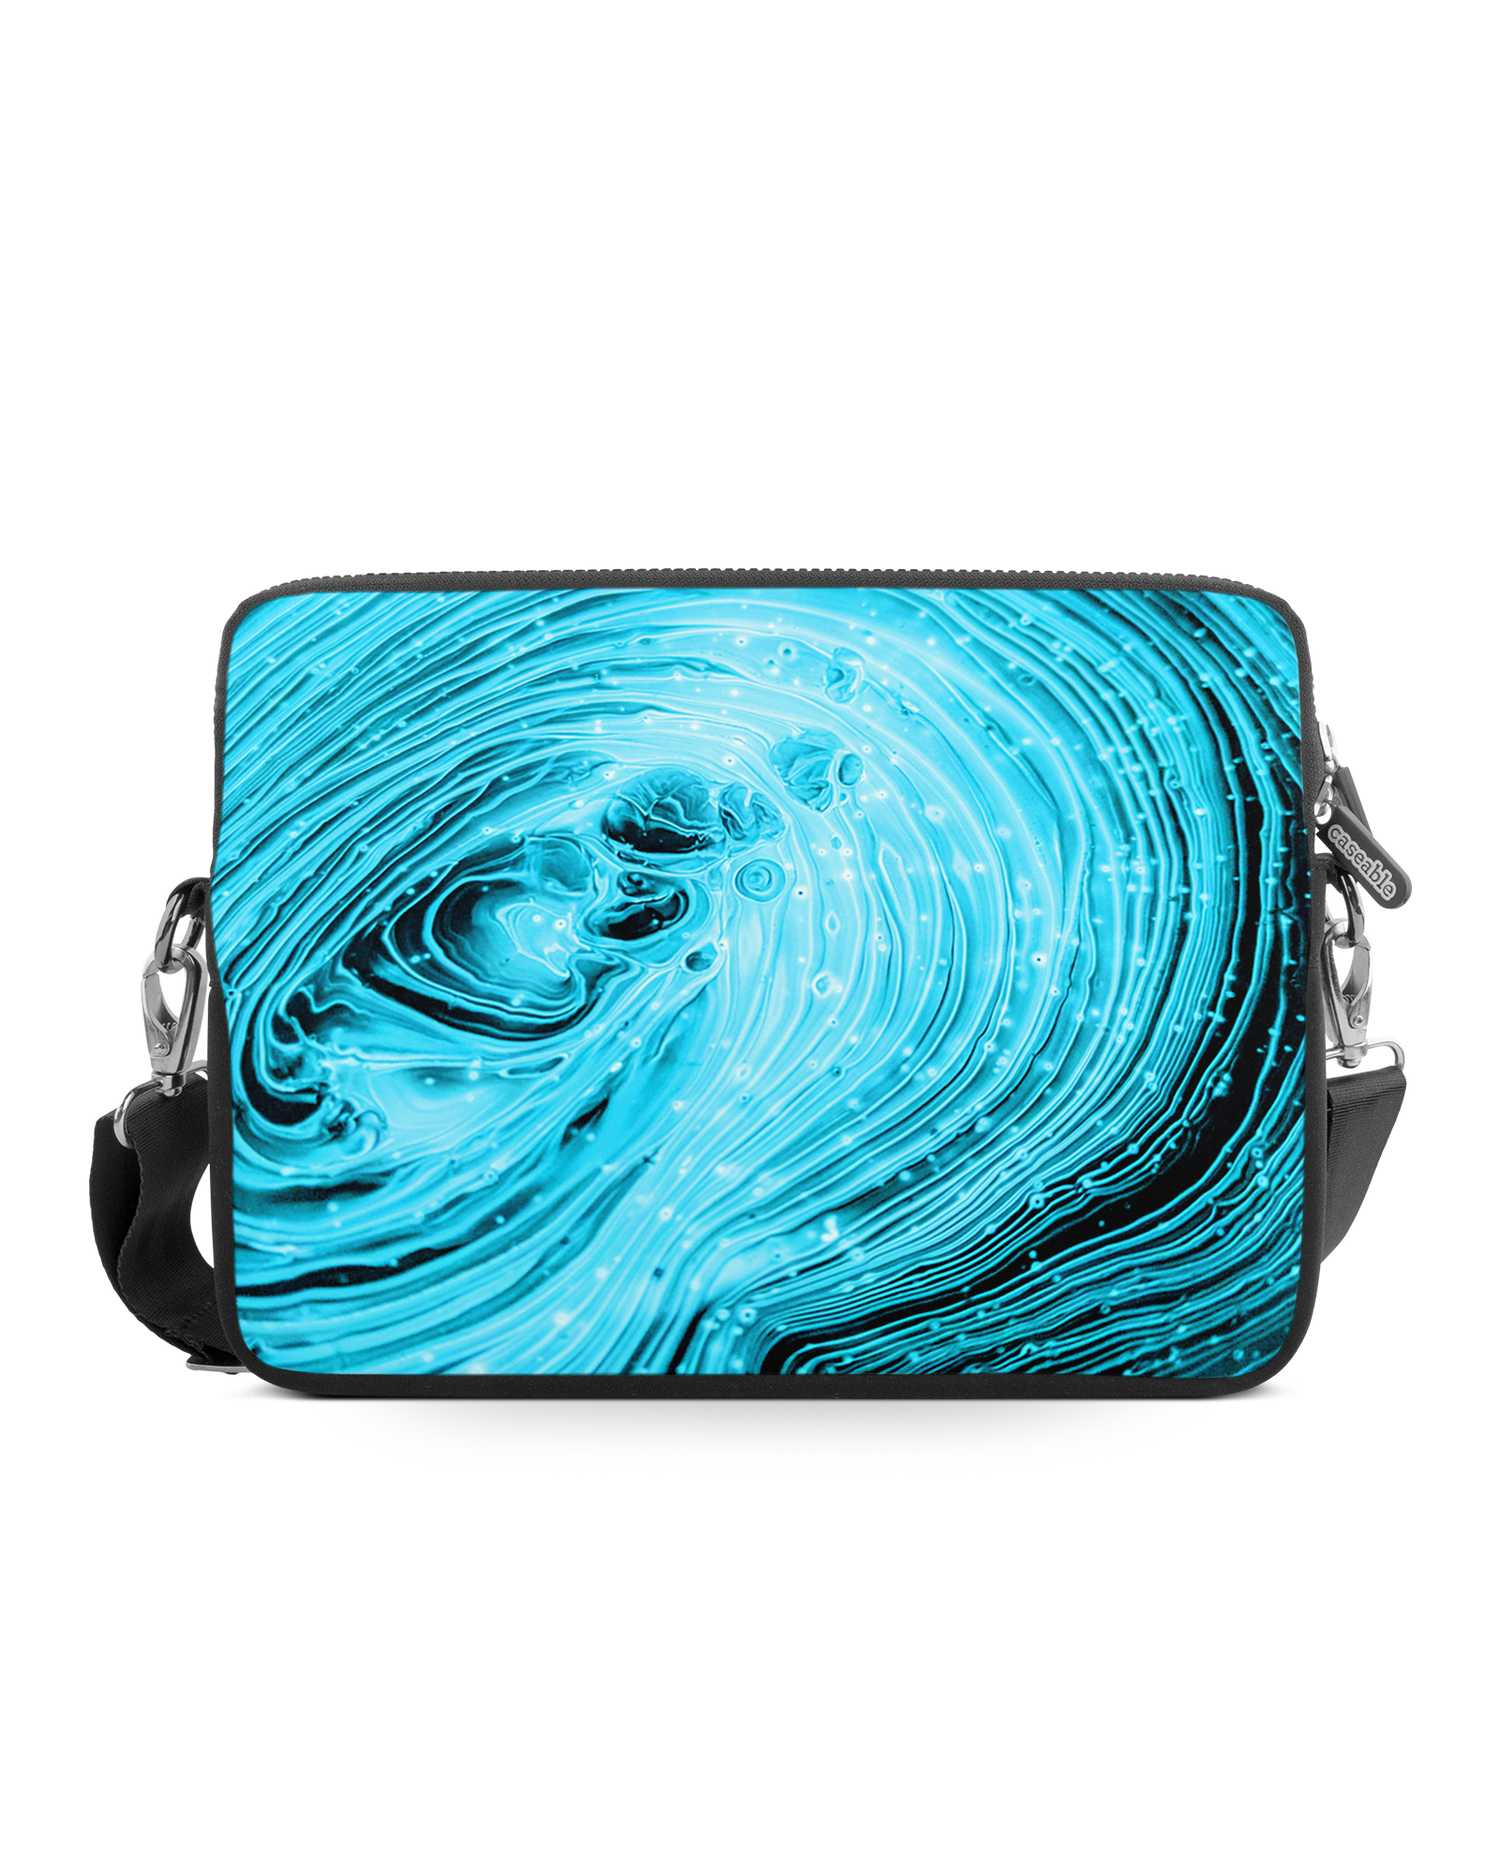 Turquoise Ripples Premium Laptoptasche 15 Zoll: Vorderansicht